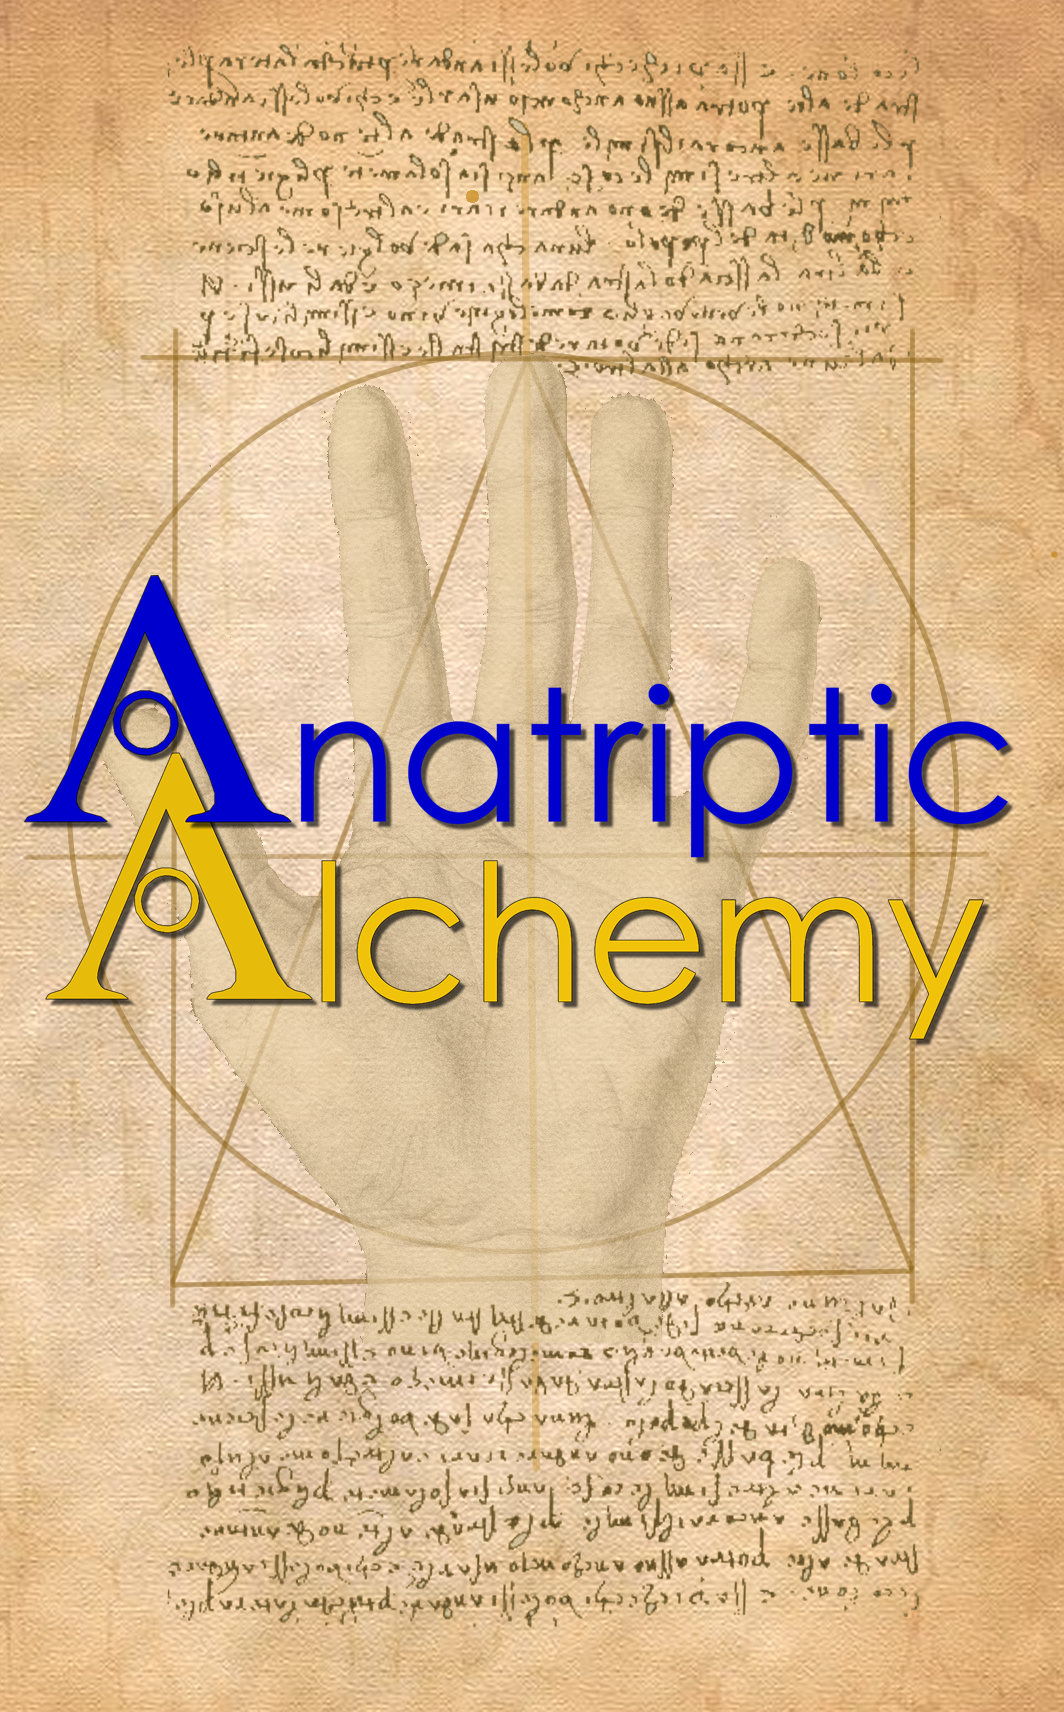 Anatriptic Alchemy